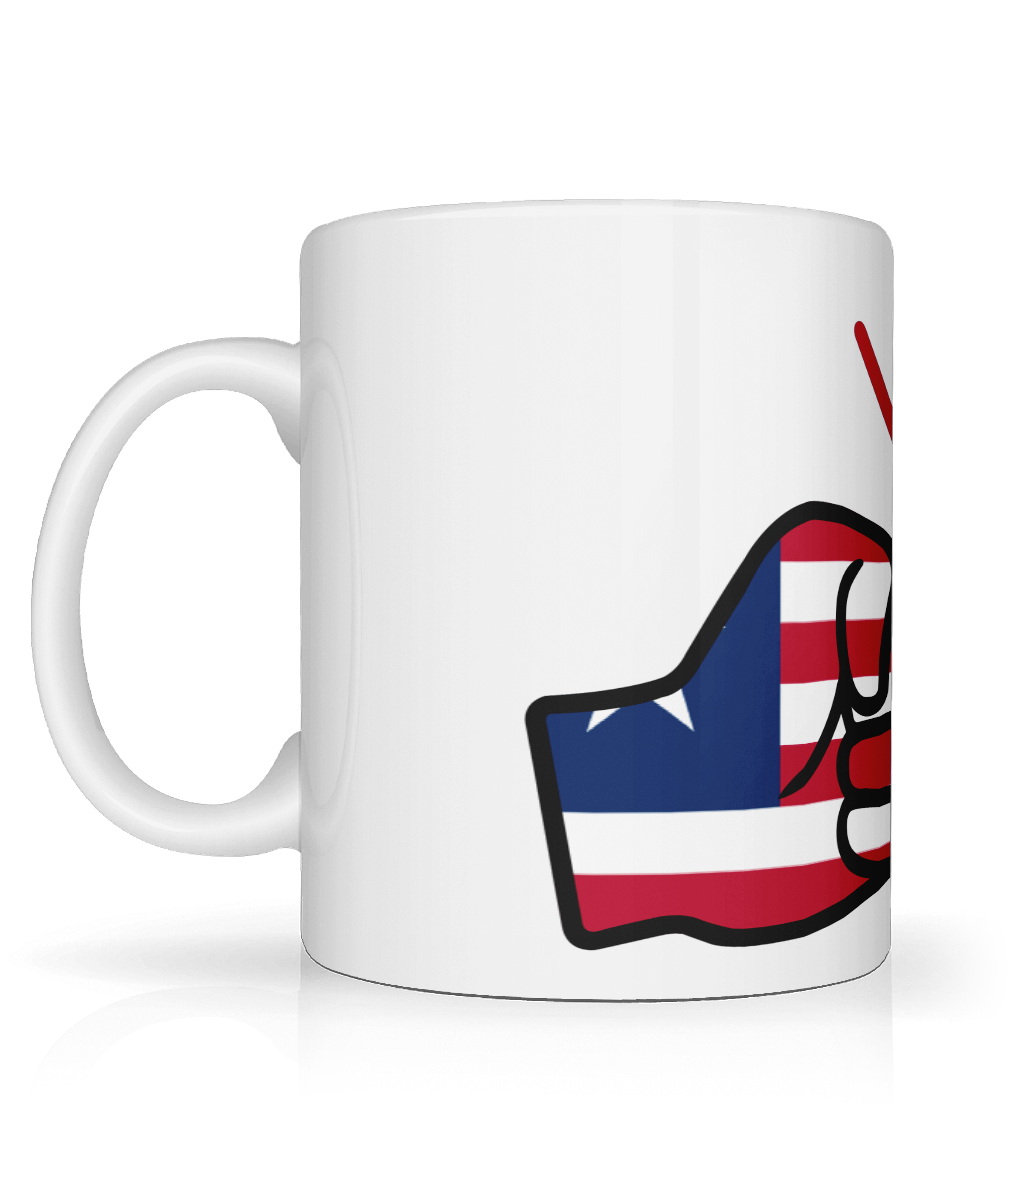 We Run Tings, Liberia, Tea, Coffee Ceramic Mug, Cup, White, 11oz